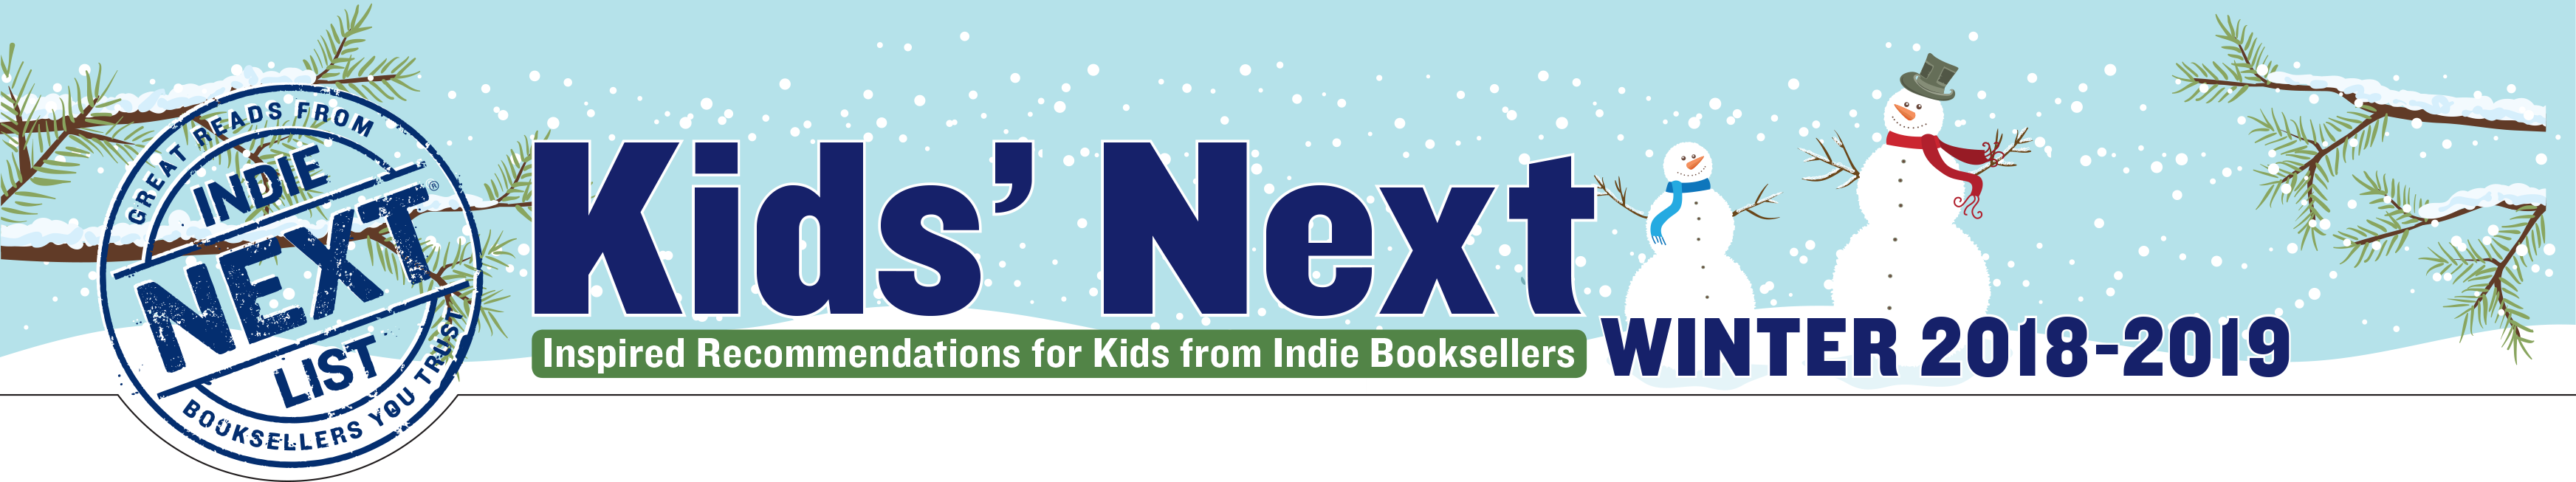 Header Image for Winter 2018 Kids Indie Next List